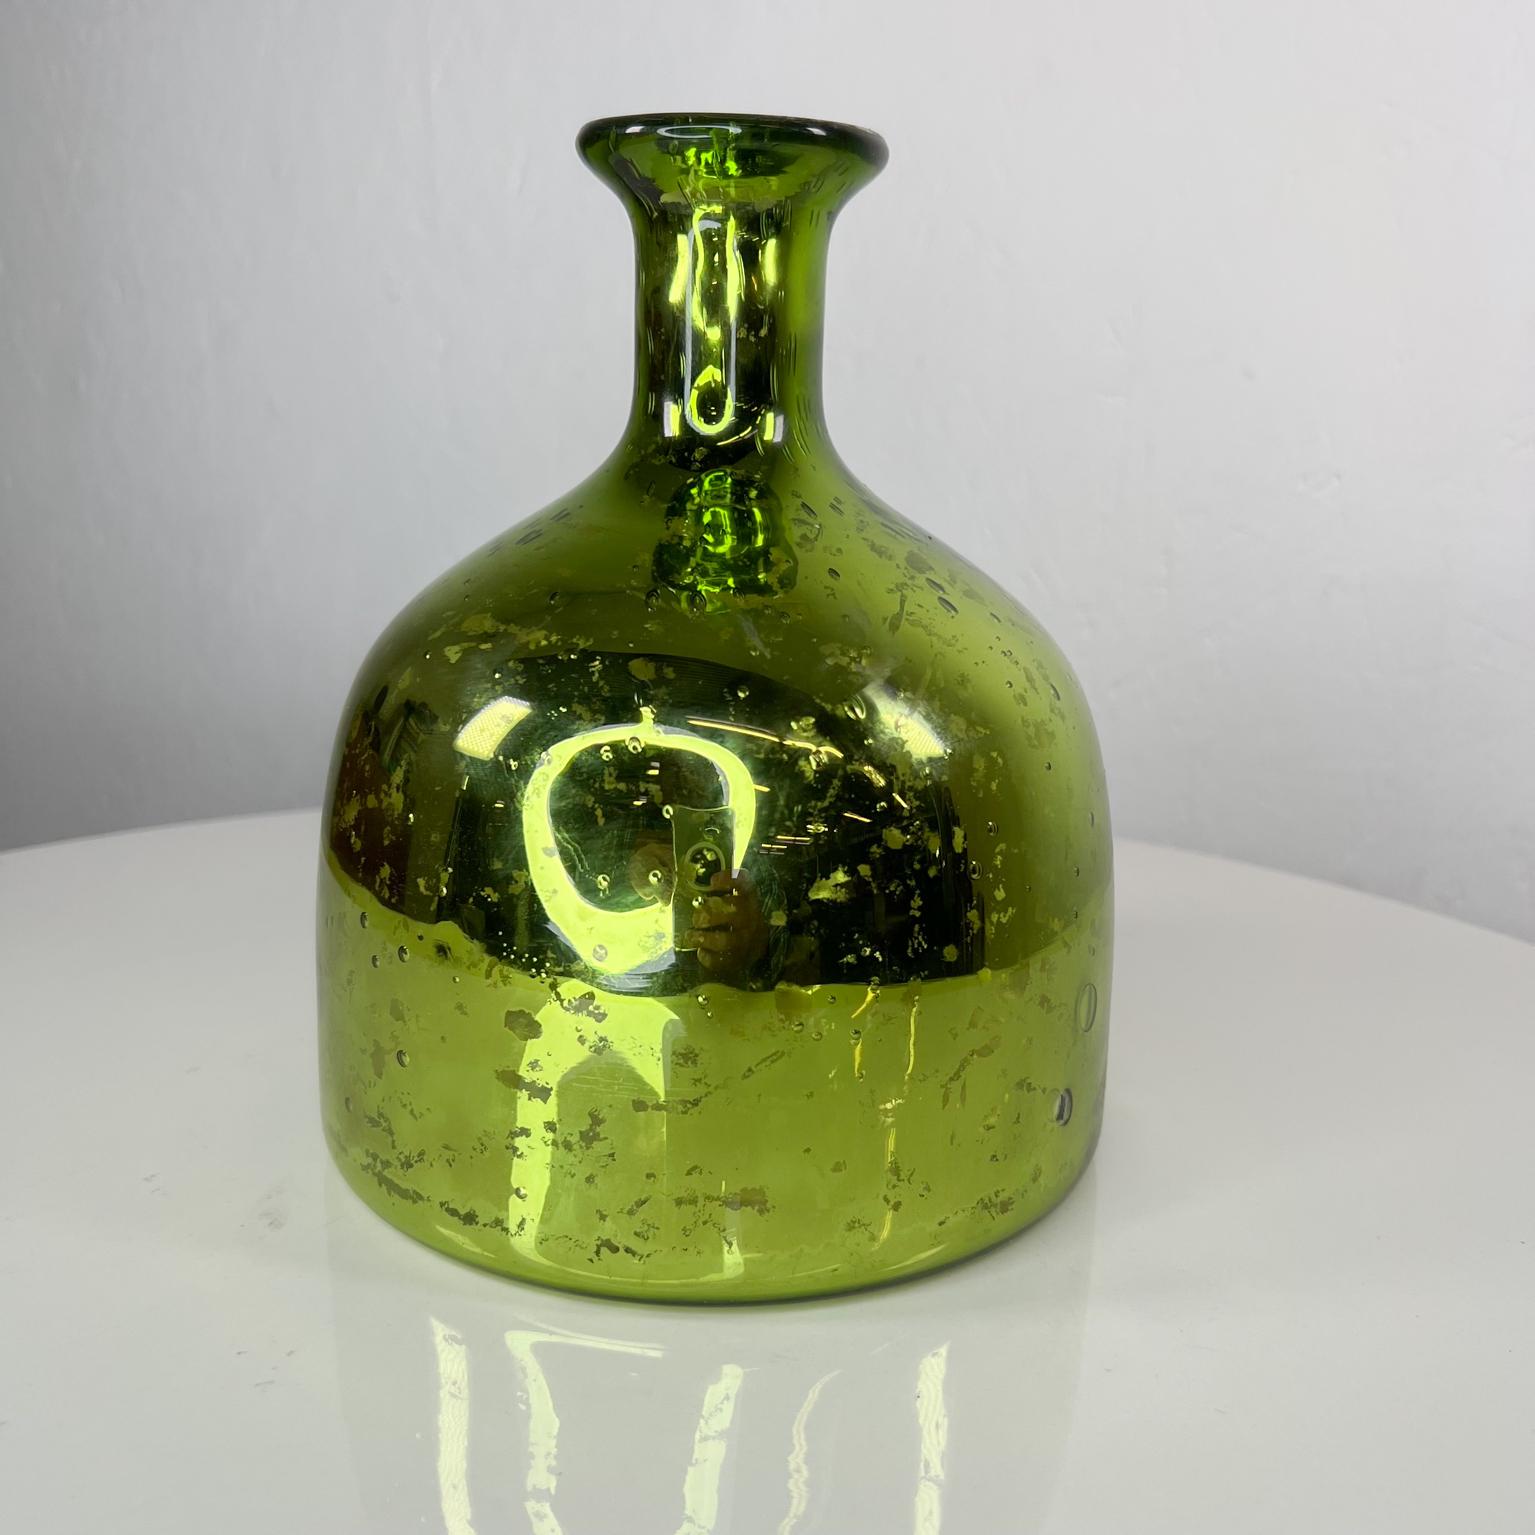 Vintage Modern grüne Vase in Mercury Glas
Maße: 7,88 hoch x 6,5 Durchmesser 
Originaler Vintage-Zustand. Gebrauchte unrestaurierte Abnutzung vorhanden.
Bilder überprüfen.